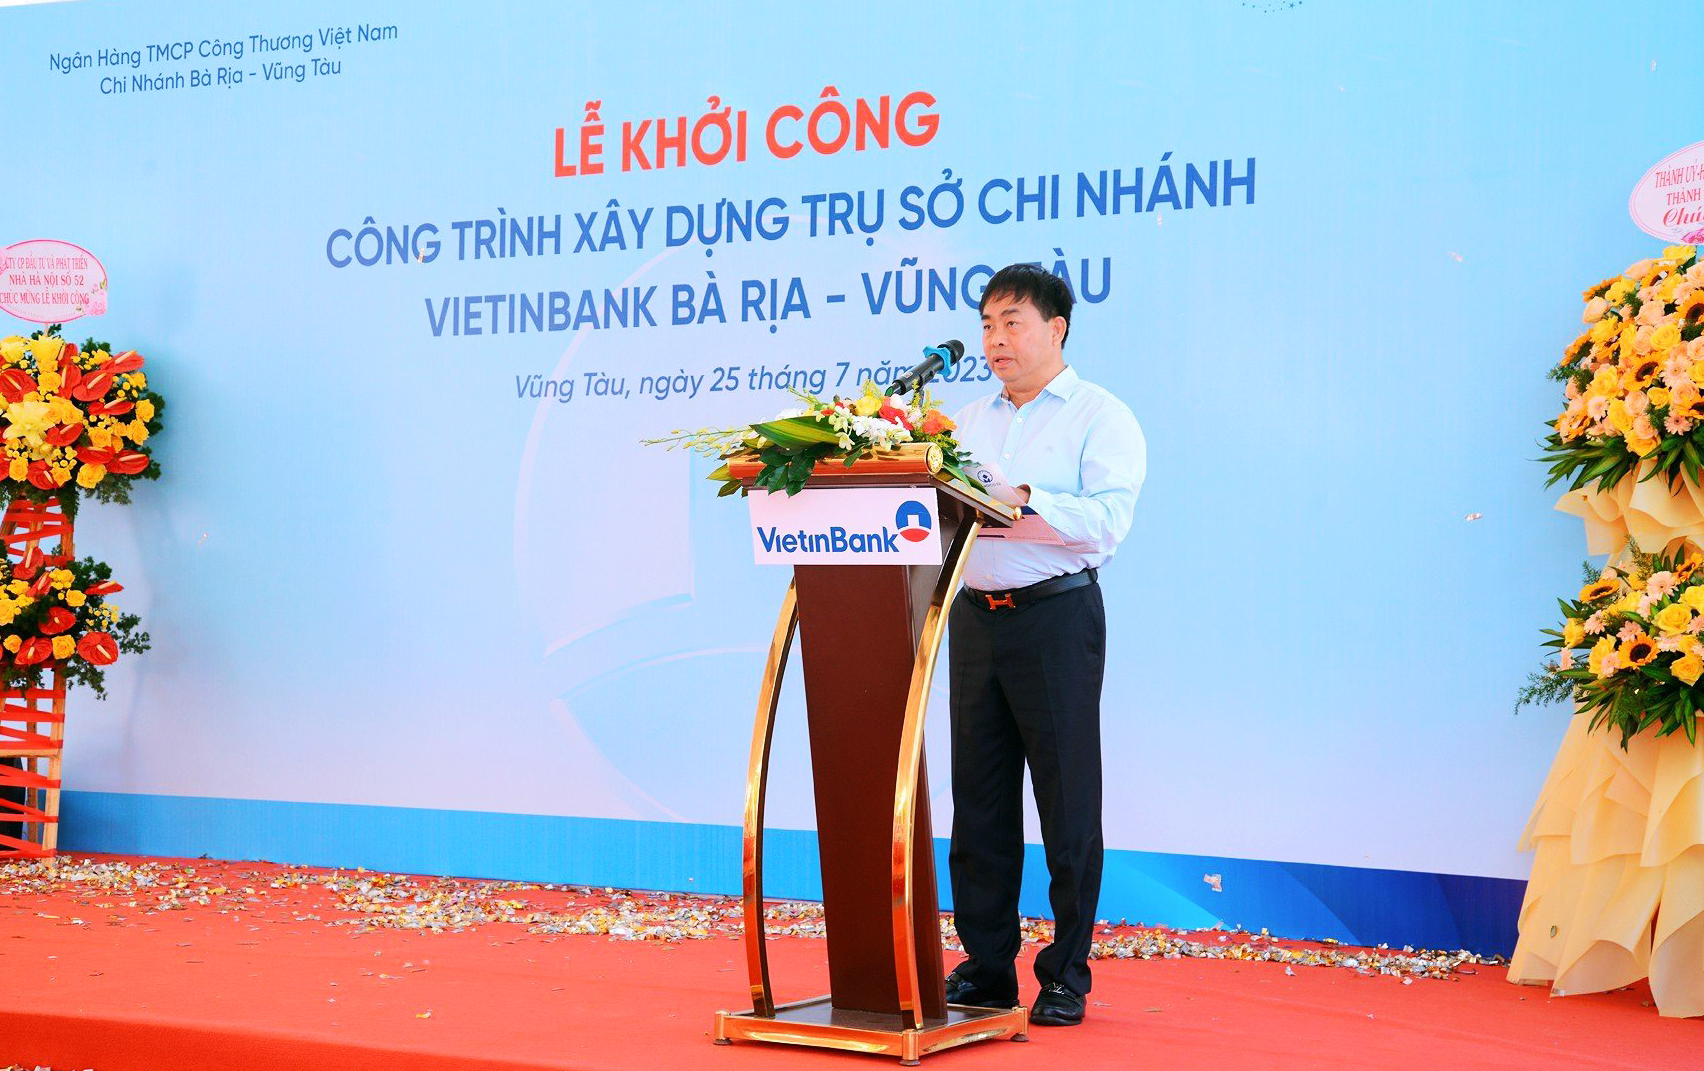 Ông Nguyễn Mạnh Hào, Chủ tịch HĐQT, Tổng giám đốc Công ty Cổ phần Đầu tư và phát triển nhà Hà Nội số 52, phát biểu tại lễ khởi công.